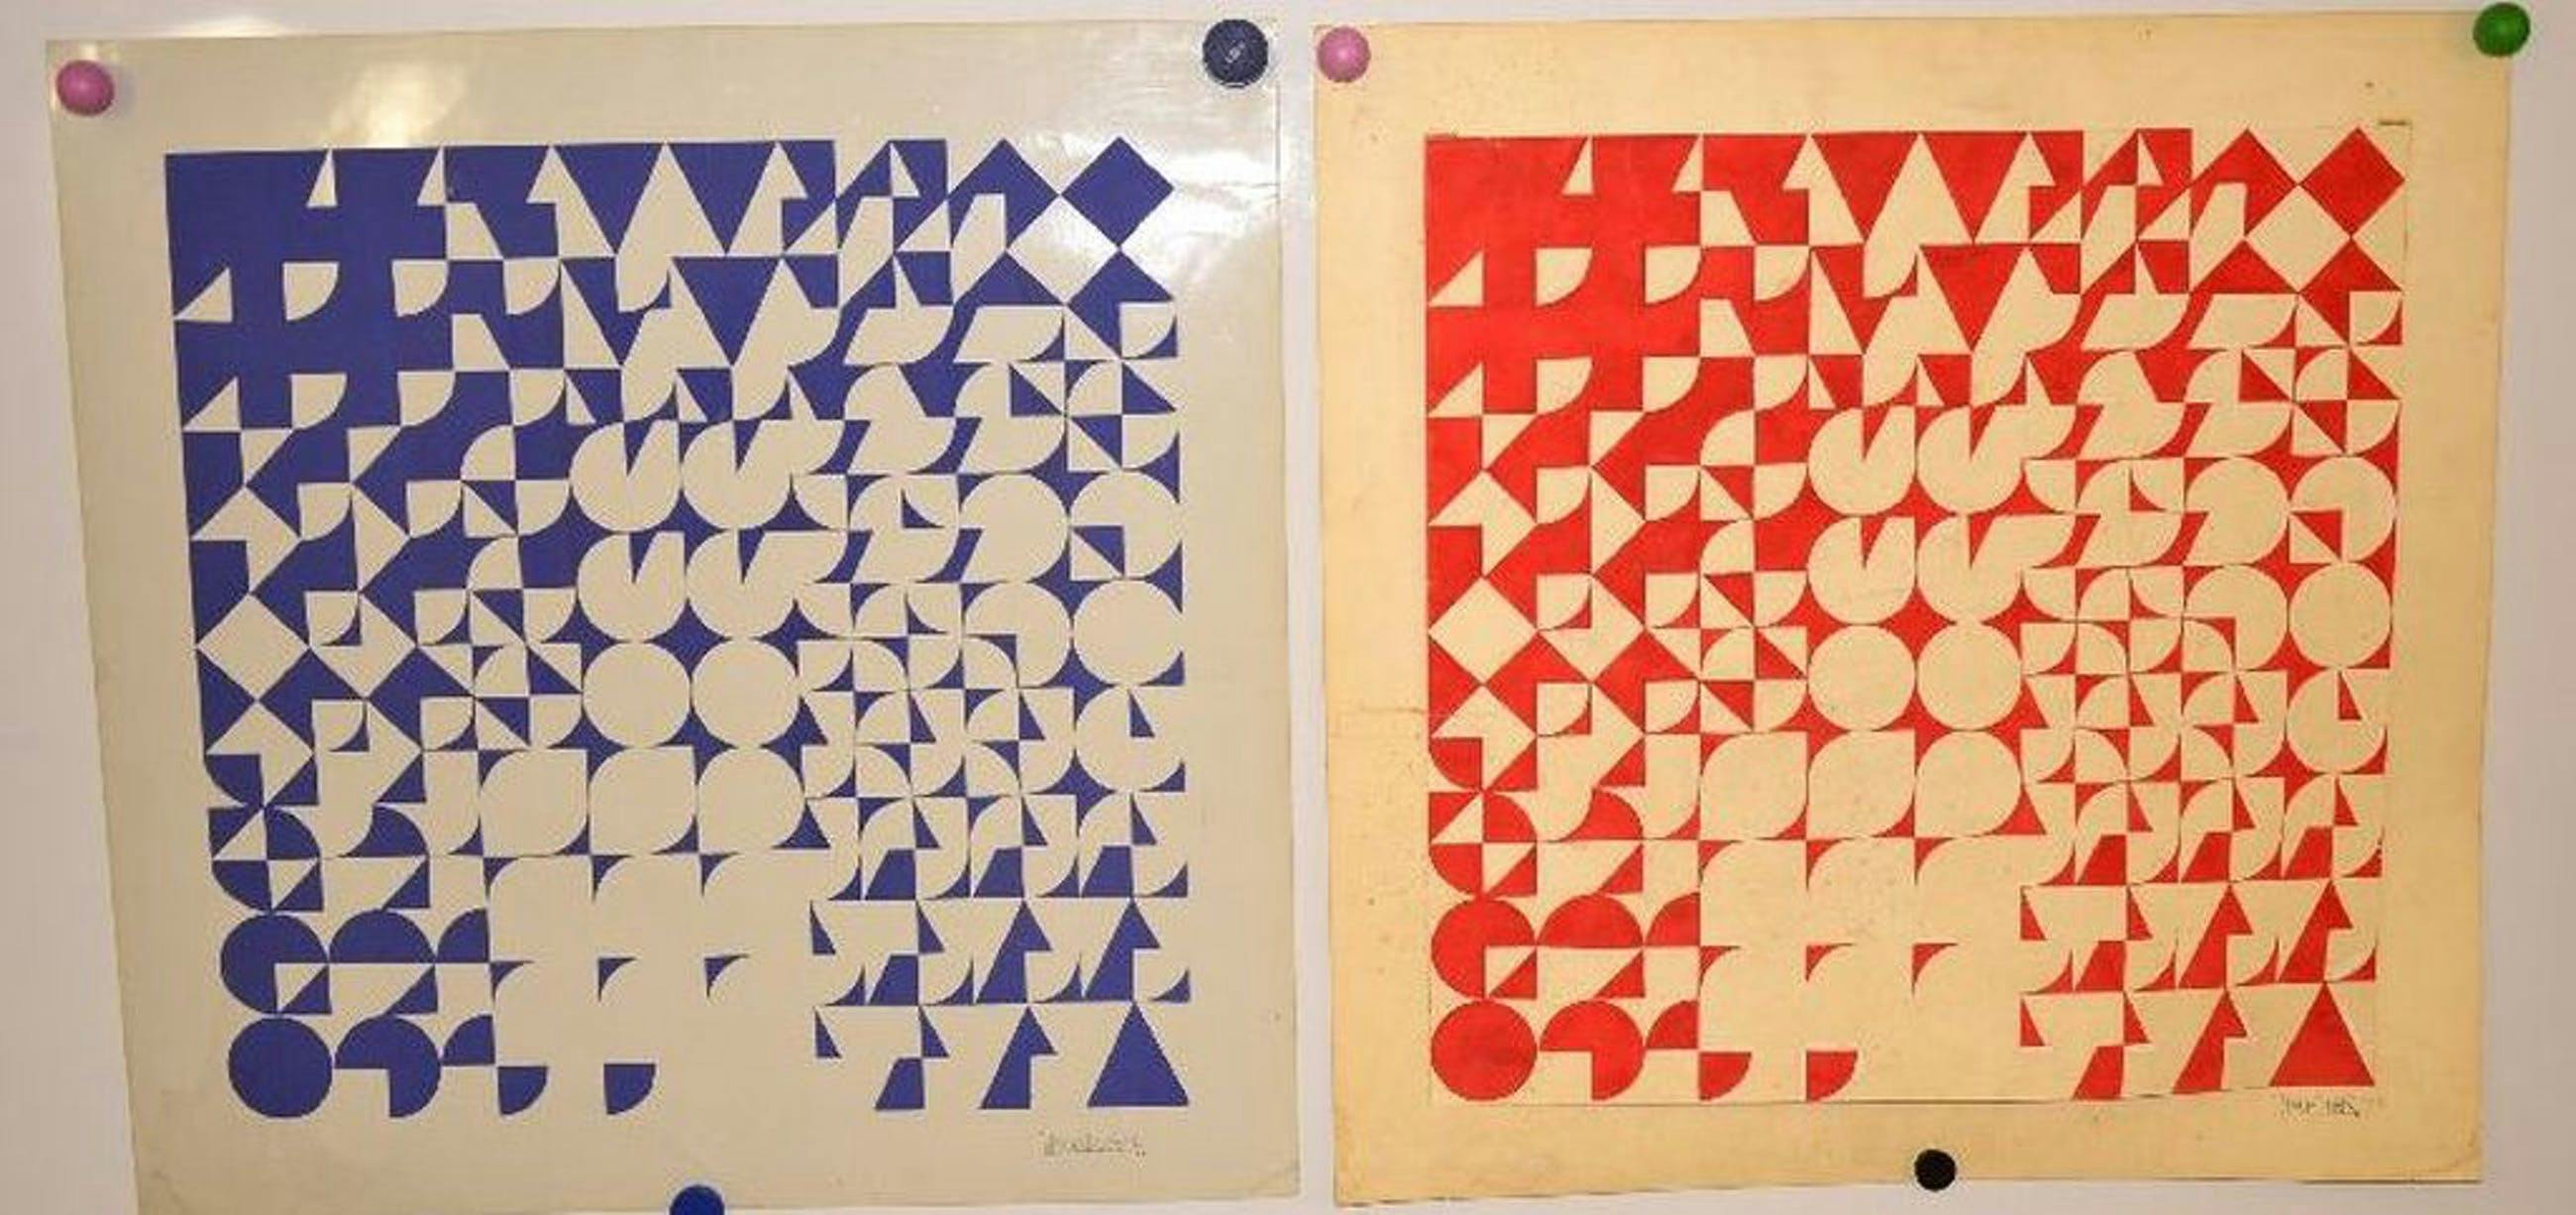 Onbekende kunstenaar: Geometrische composities, 1973 kopen? Bied vanaf 1!